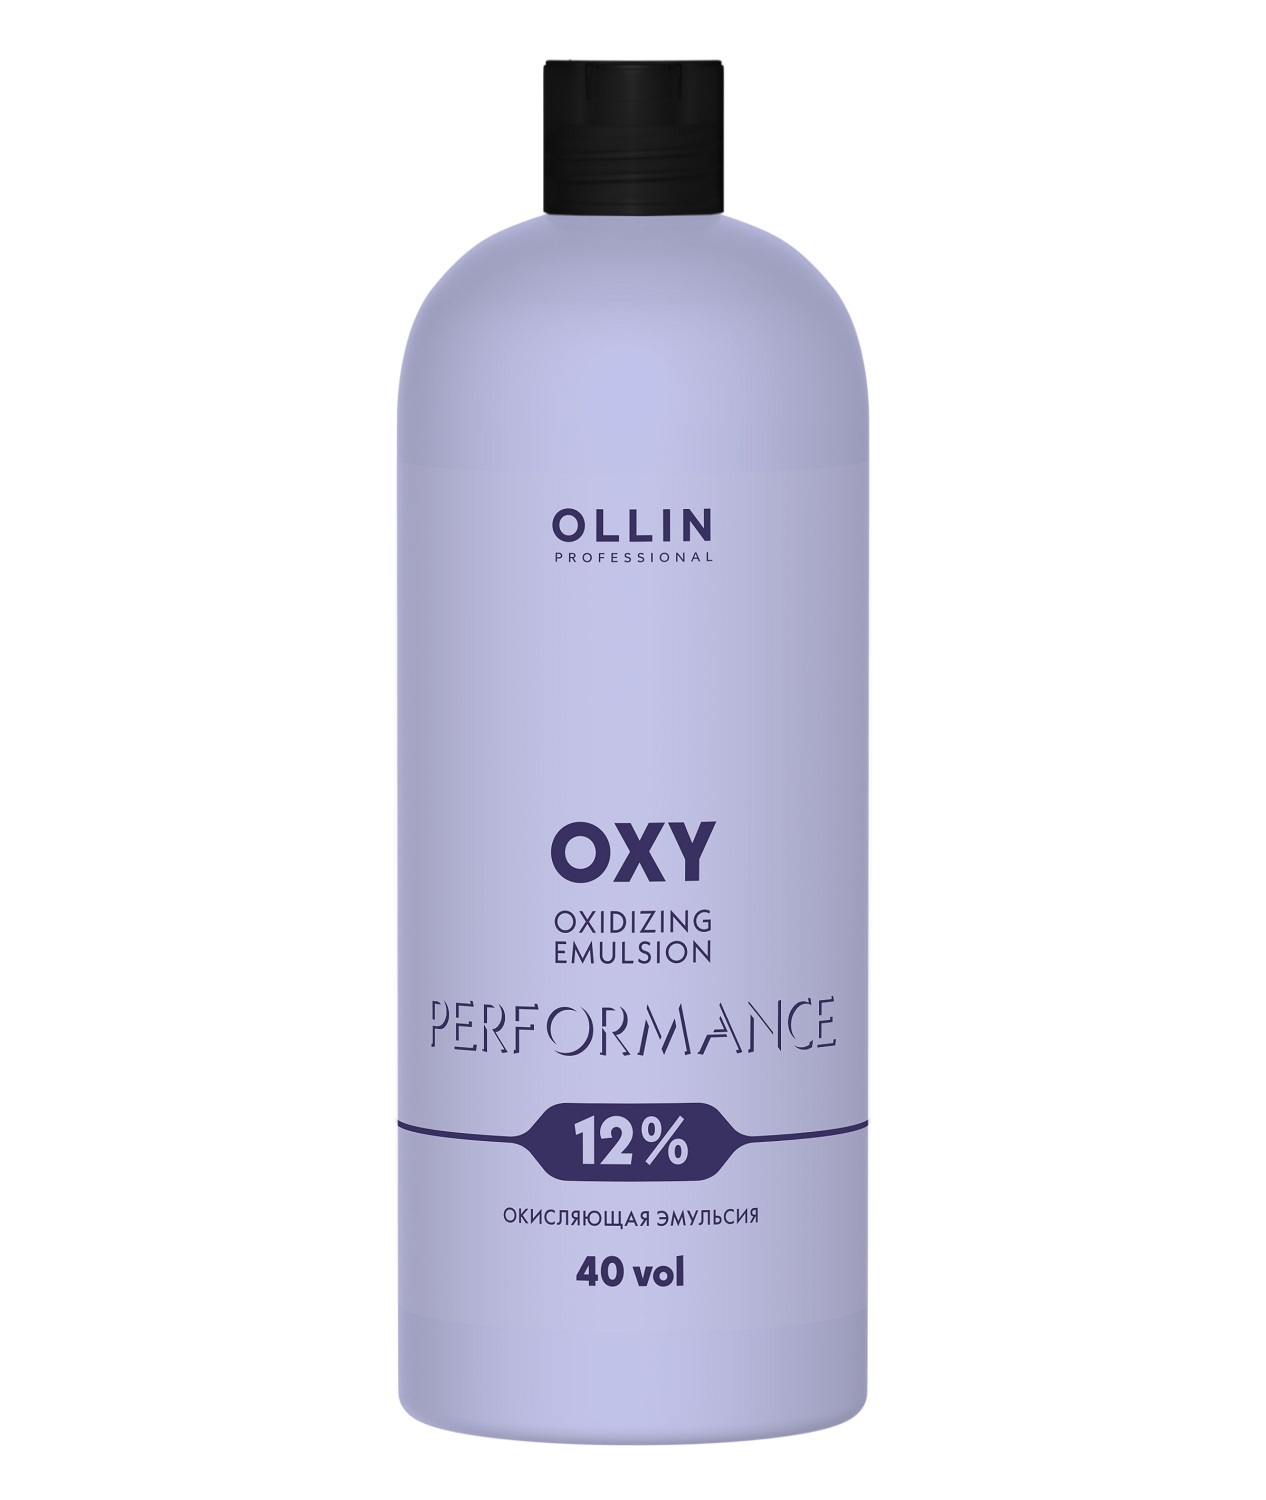 Ollin Professional Окисляющая эмульсия 12% 40 vol, 1000 мл (Ollin Professional, Performance) окисляющая эмульсия 1 5% ollin professional performance oxy 90 мл